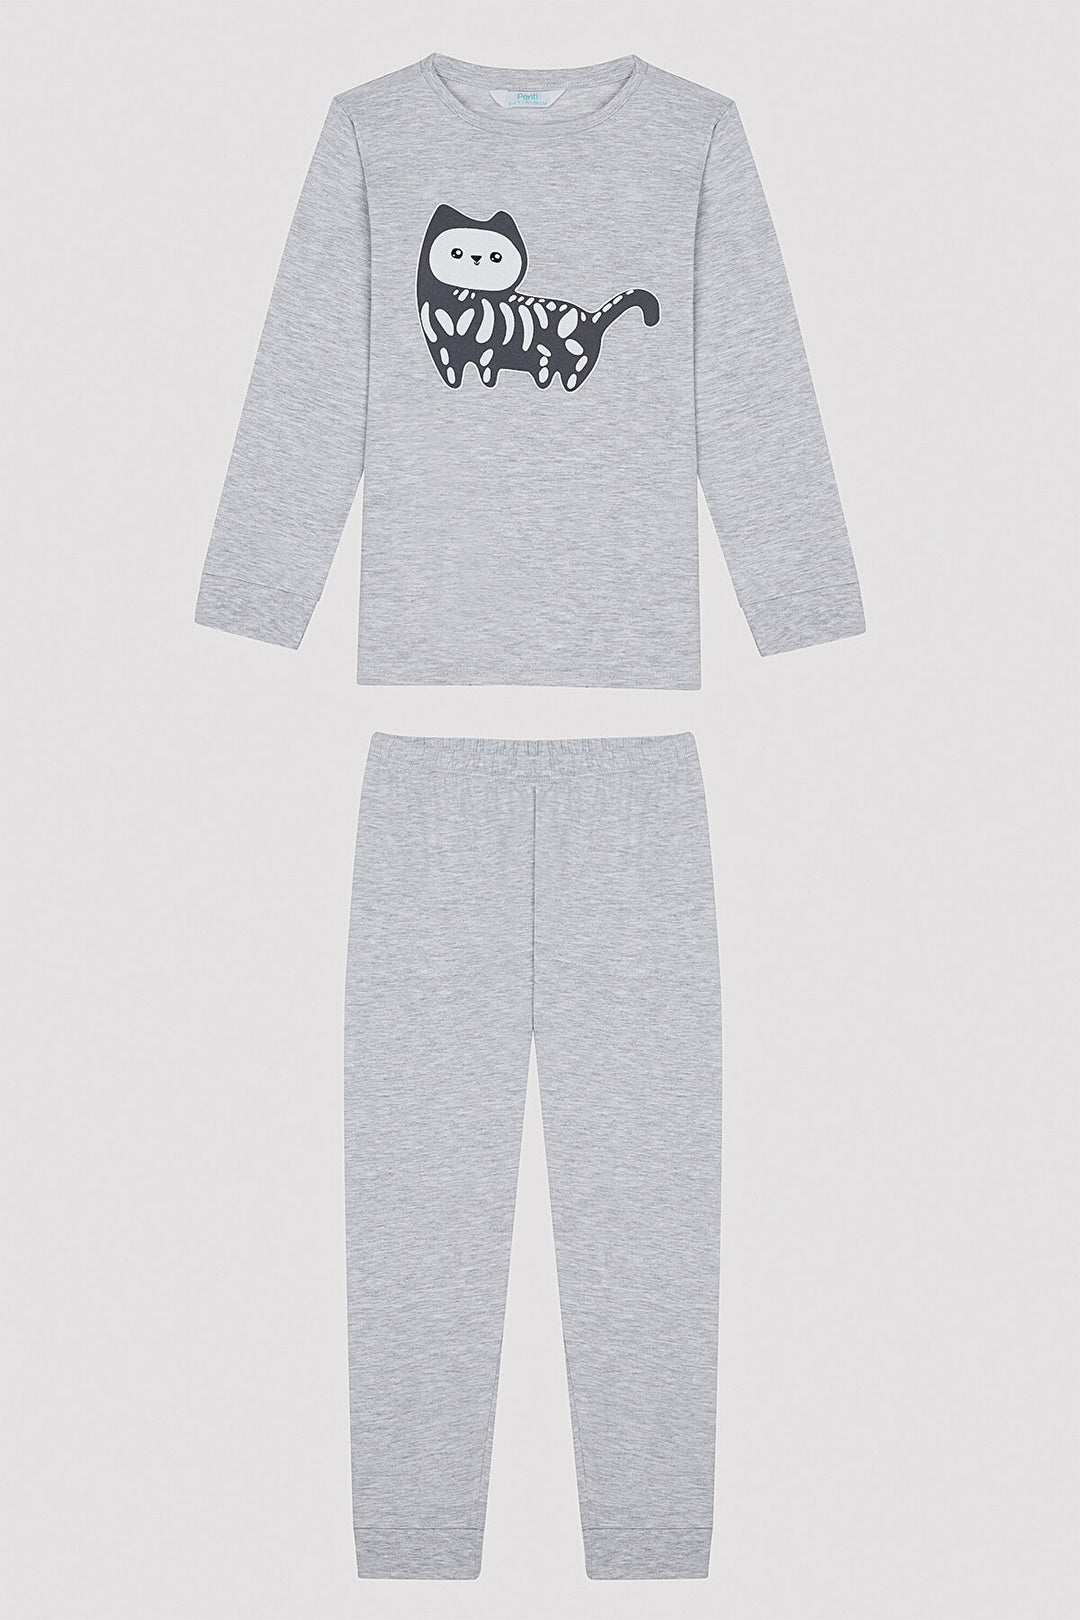 Boy's Cat Printed 2-Piece Pajama Set